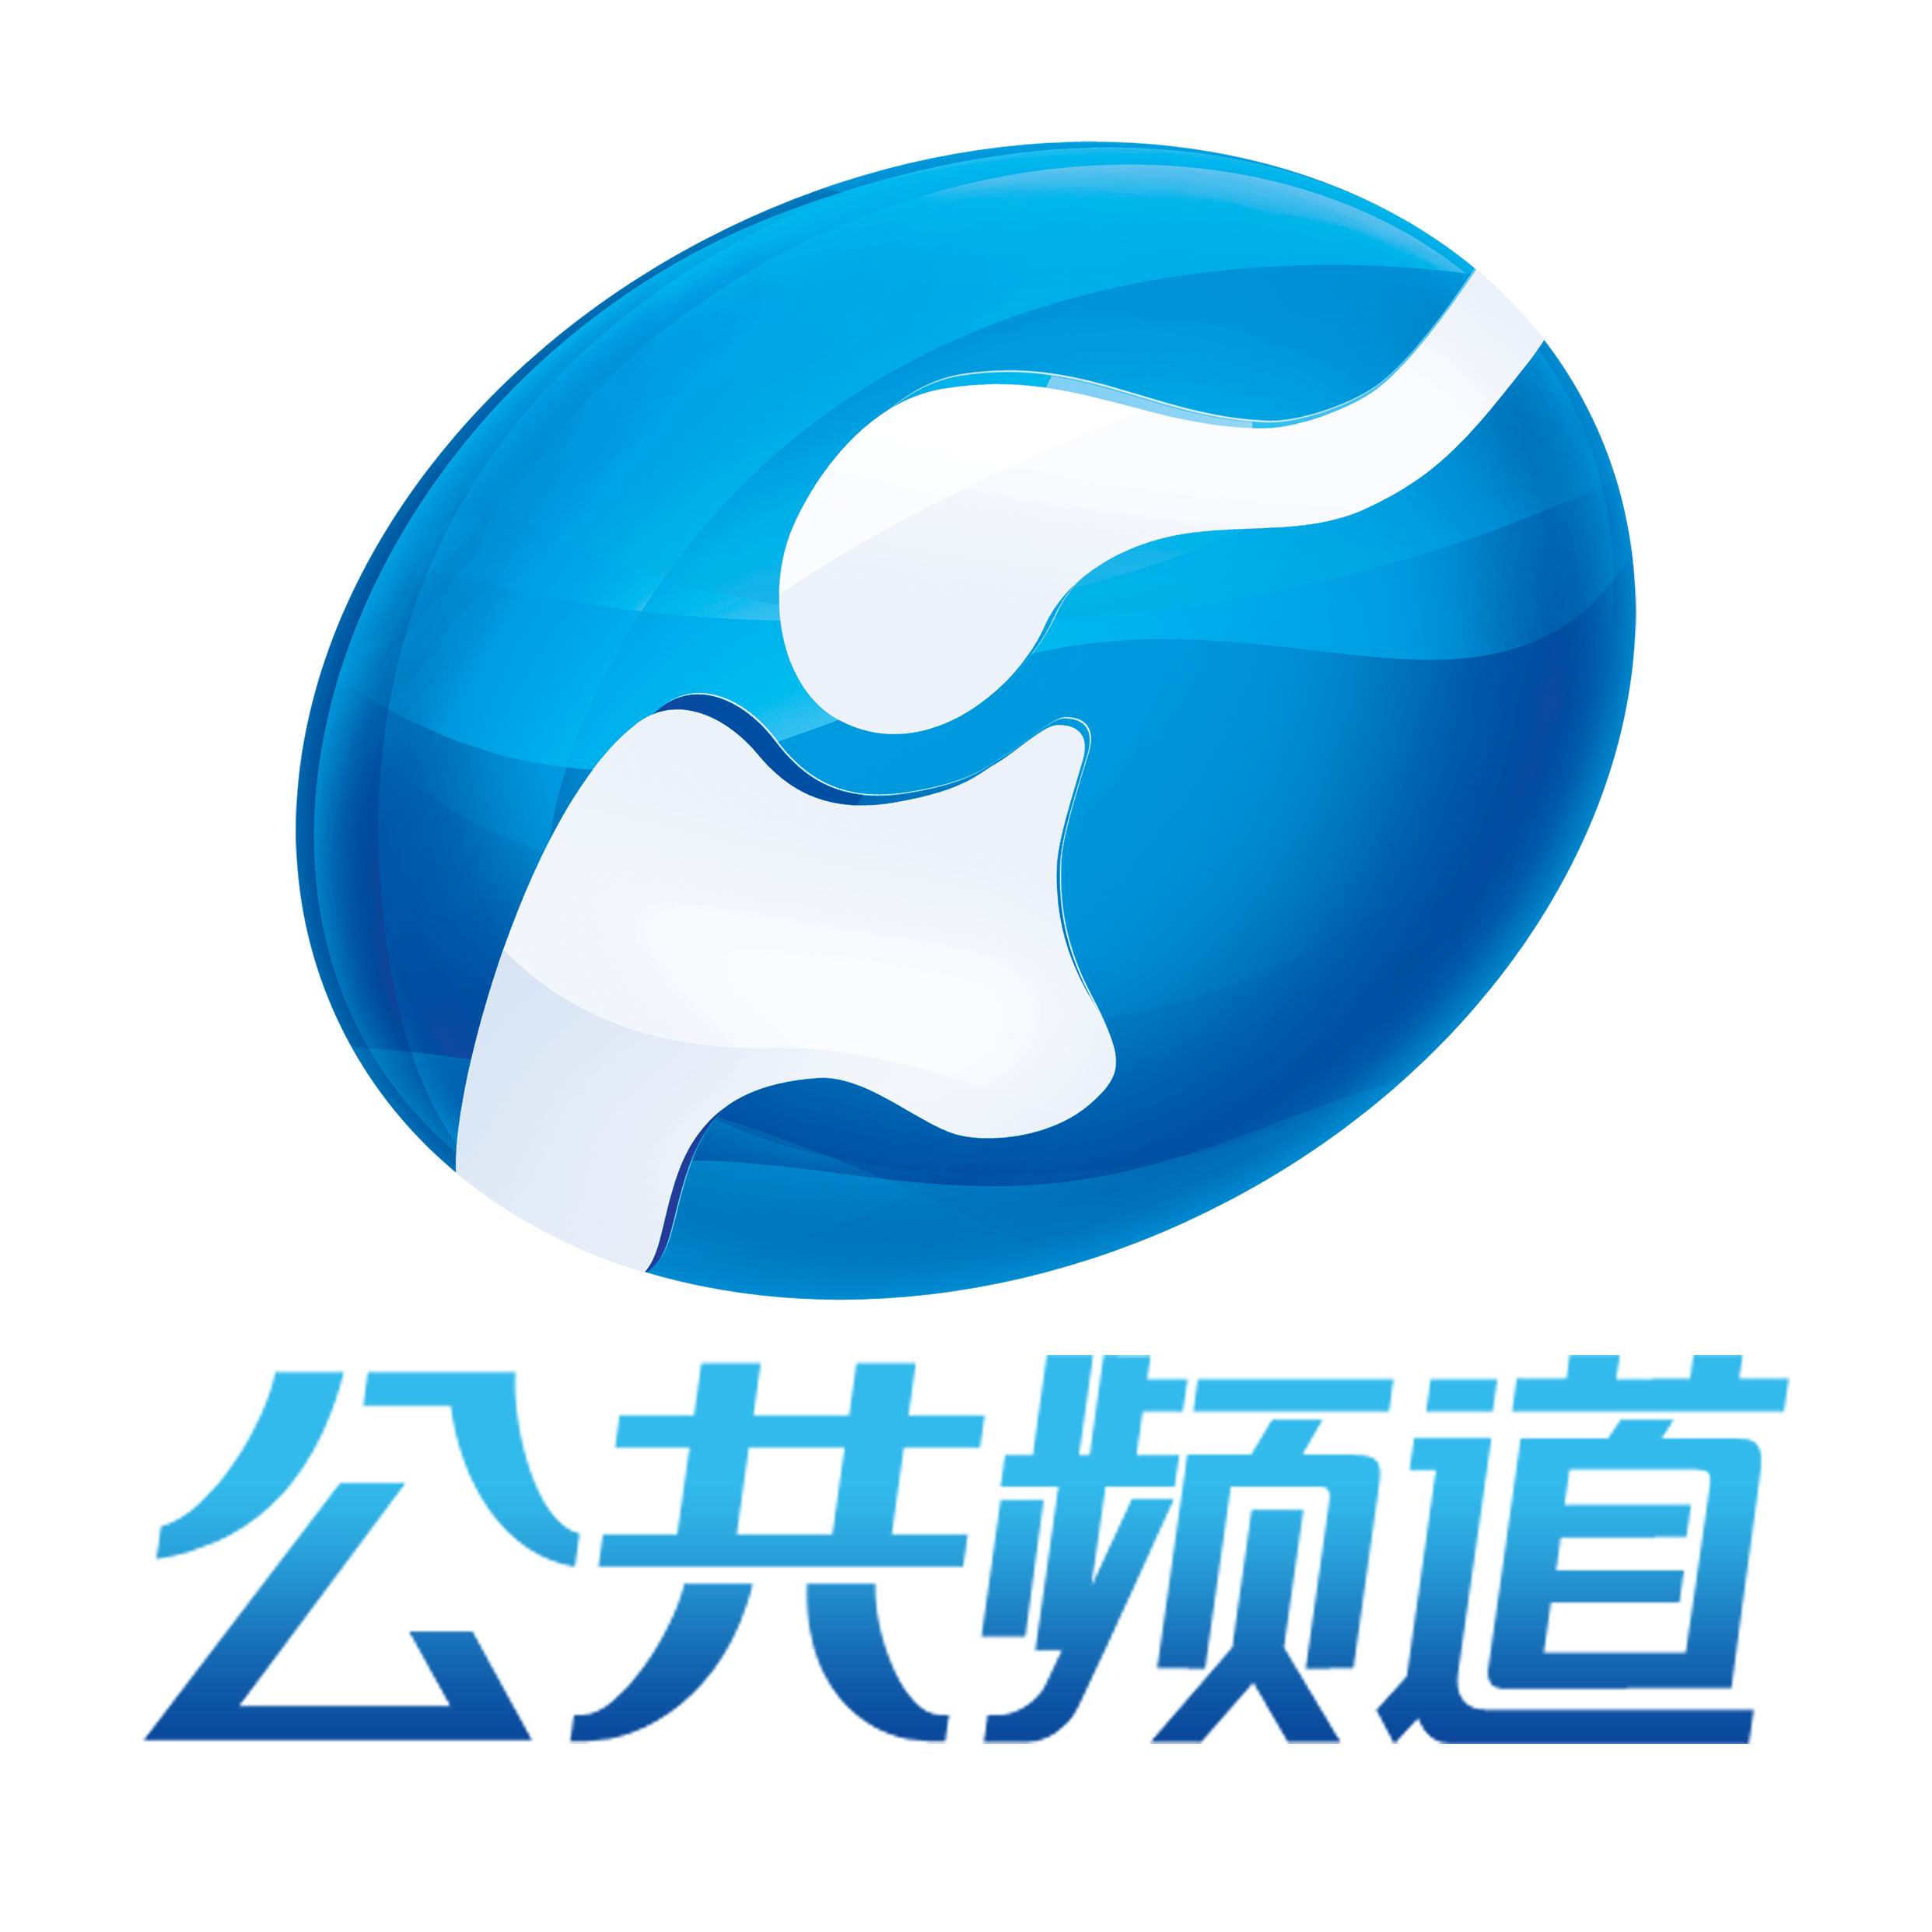 偃师电视台logo图片